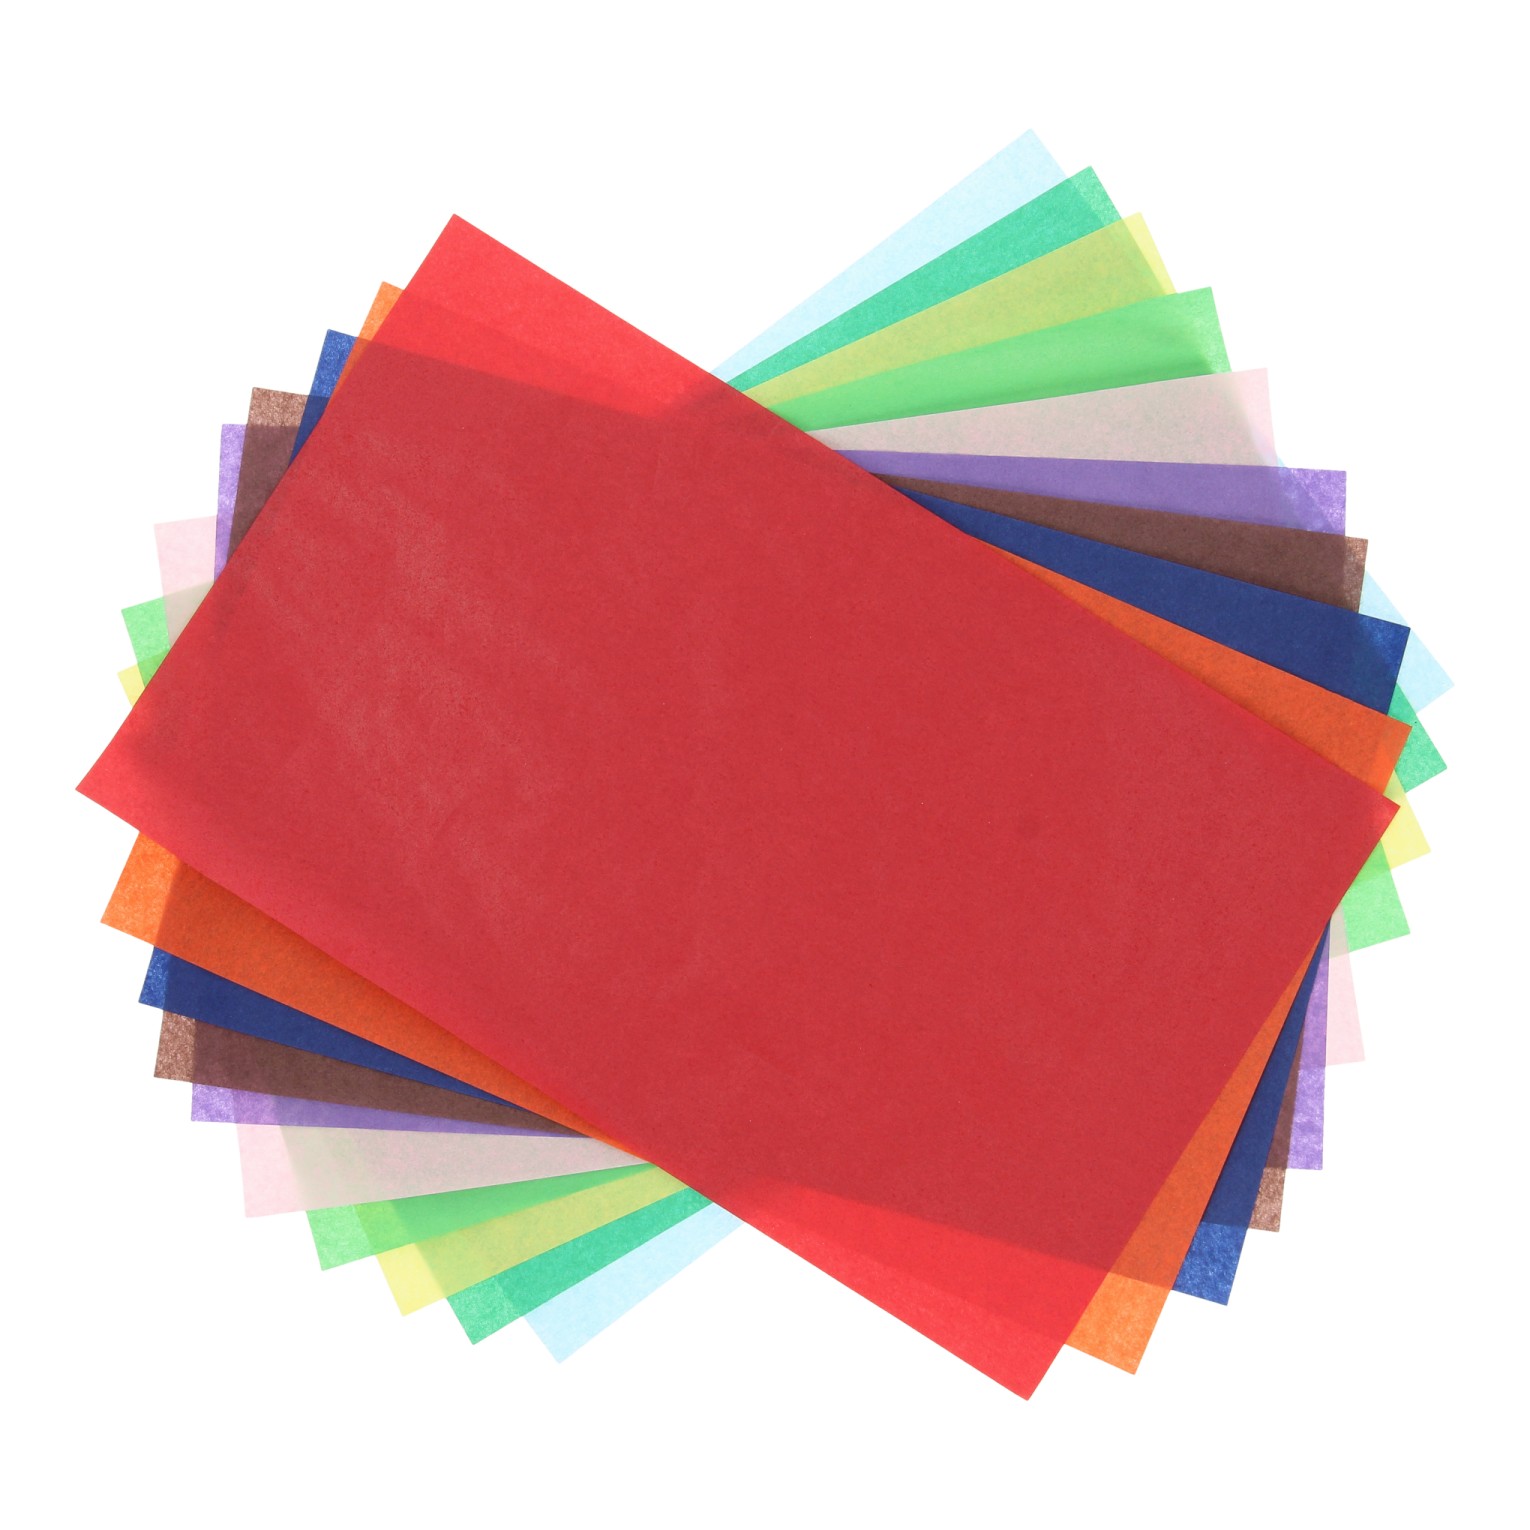 Voorkeursbehandeling Maak het zwaar Schep Transparant Papier Gekleurd, 10 vellen online kopen | Lobbes Speelgoed